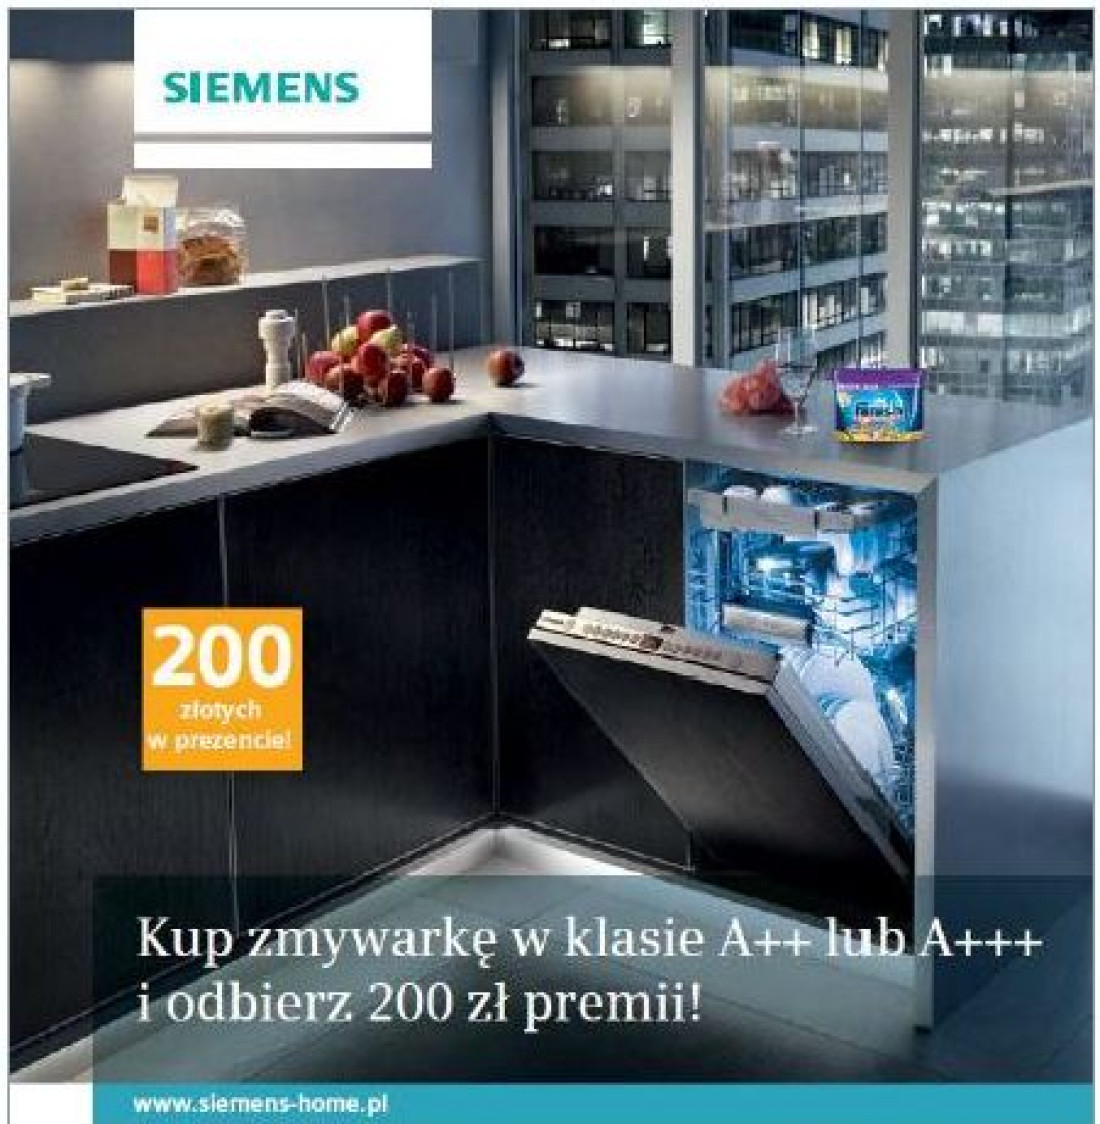 Zmywarka pełna korzyści - akcja promocyjna marki Siemens